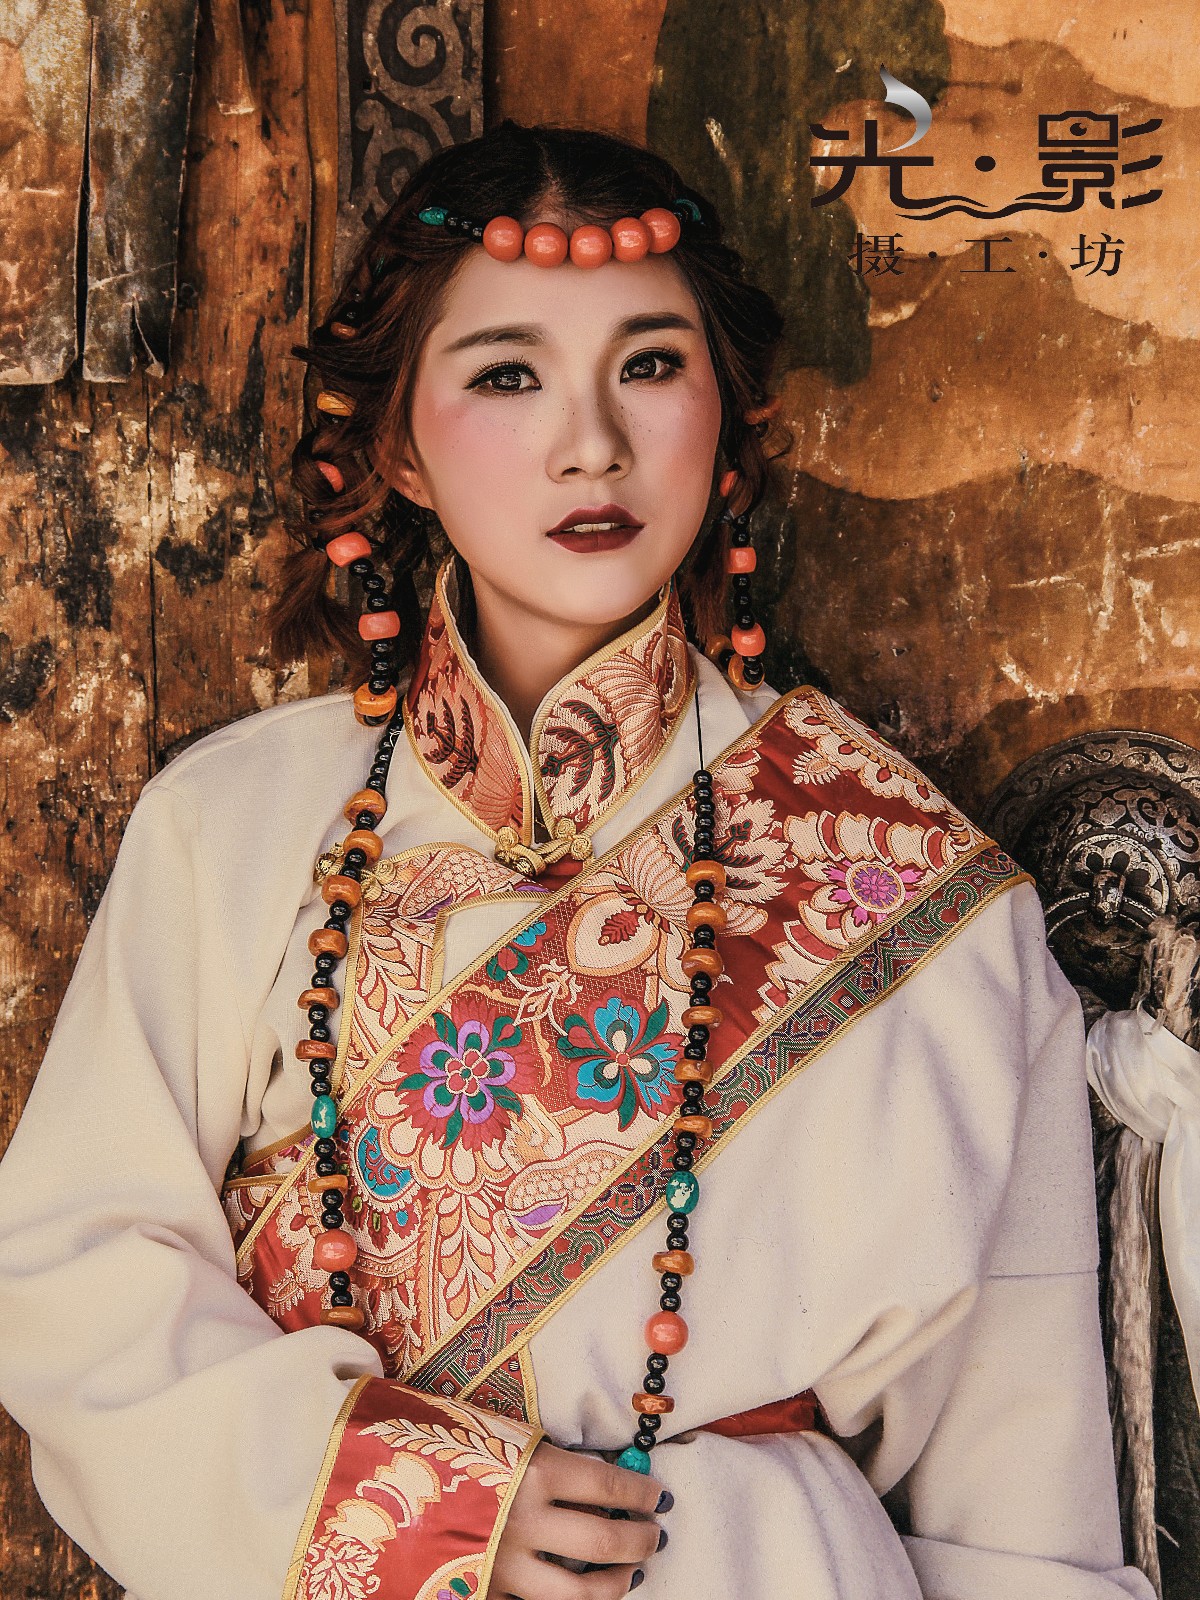 十一_邓娃儿《藏族少女》美图作品图片欣赏_艺图语